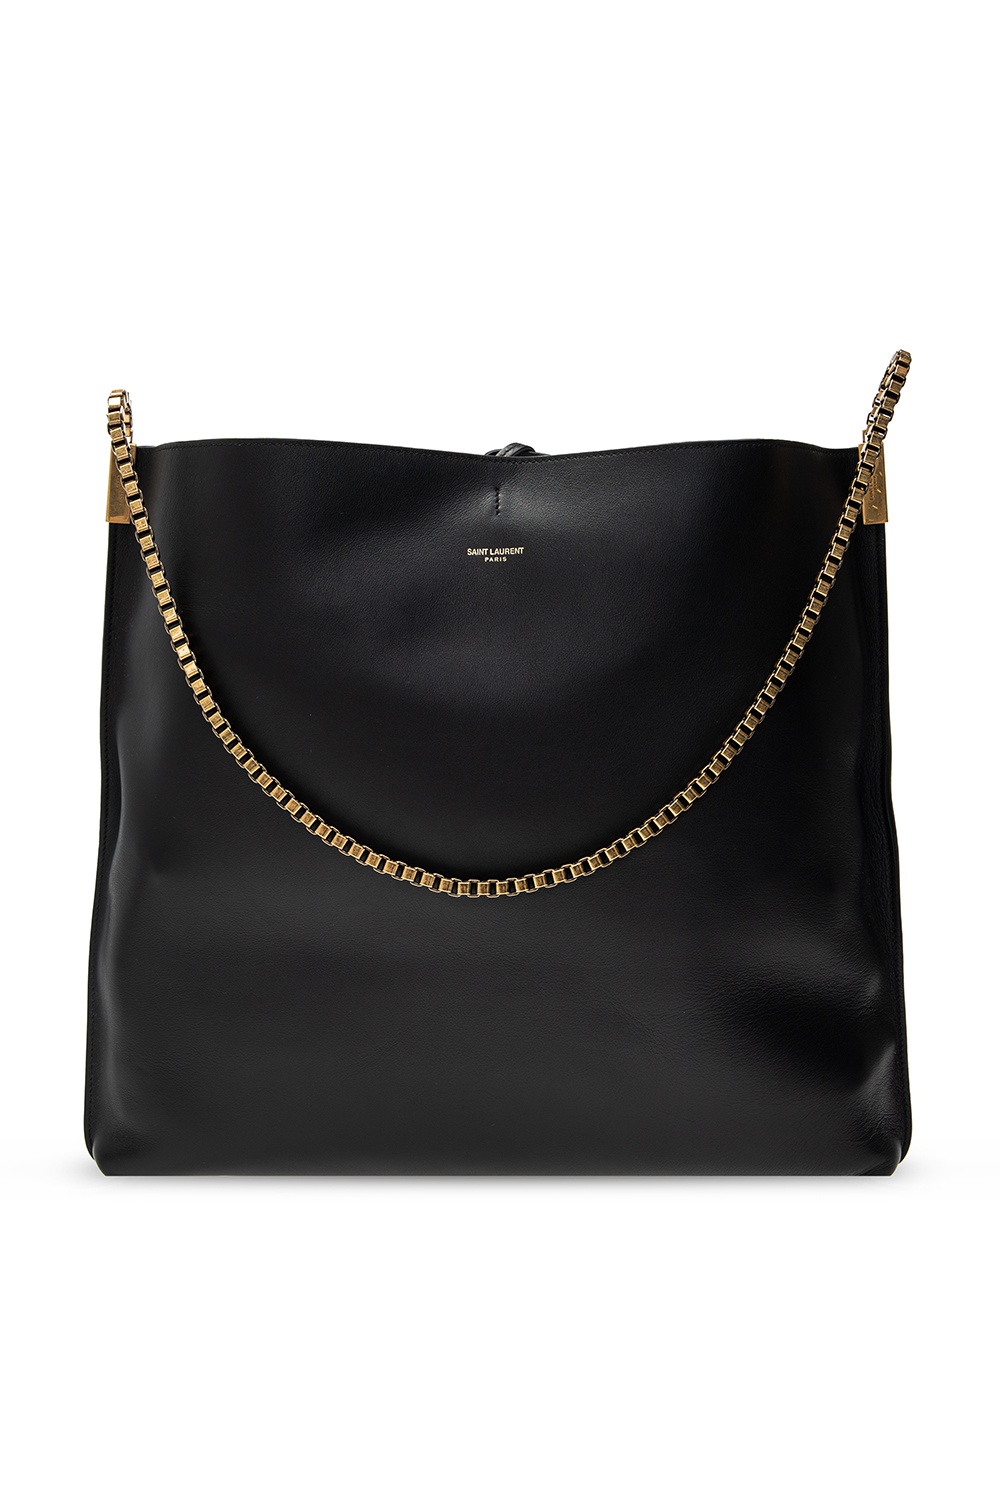 Saint Laurent ‘Suzanne’ shopper bag